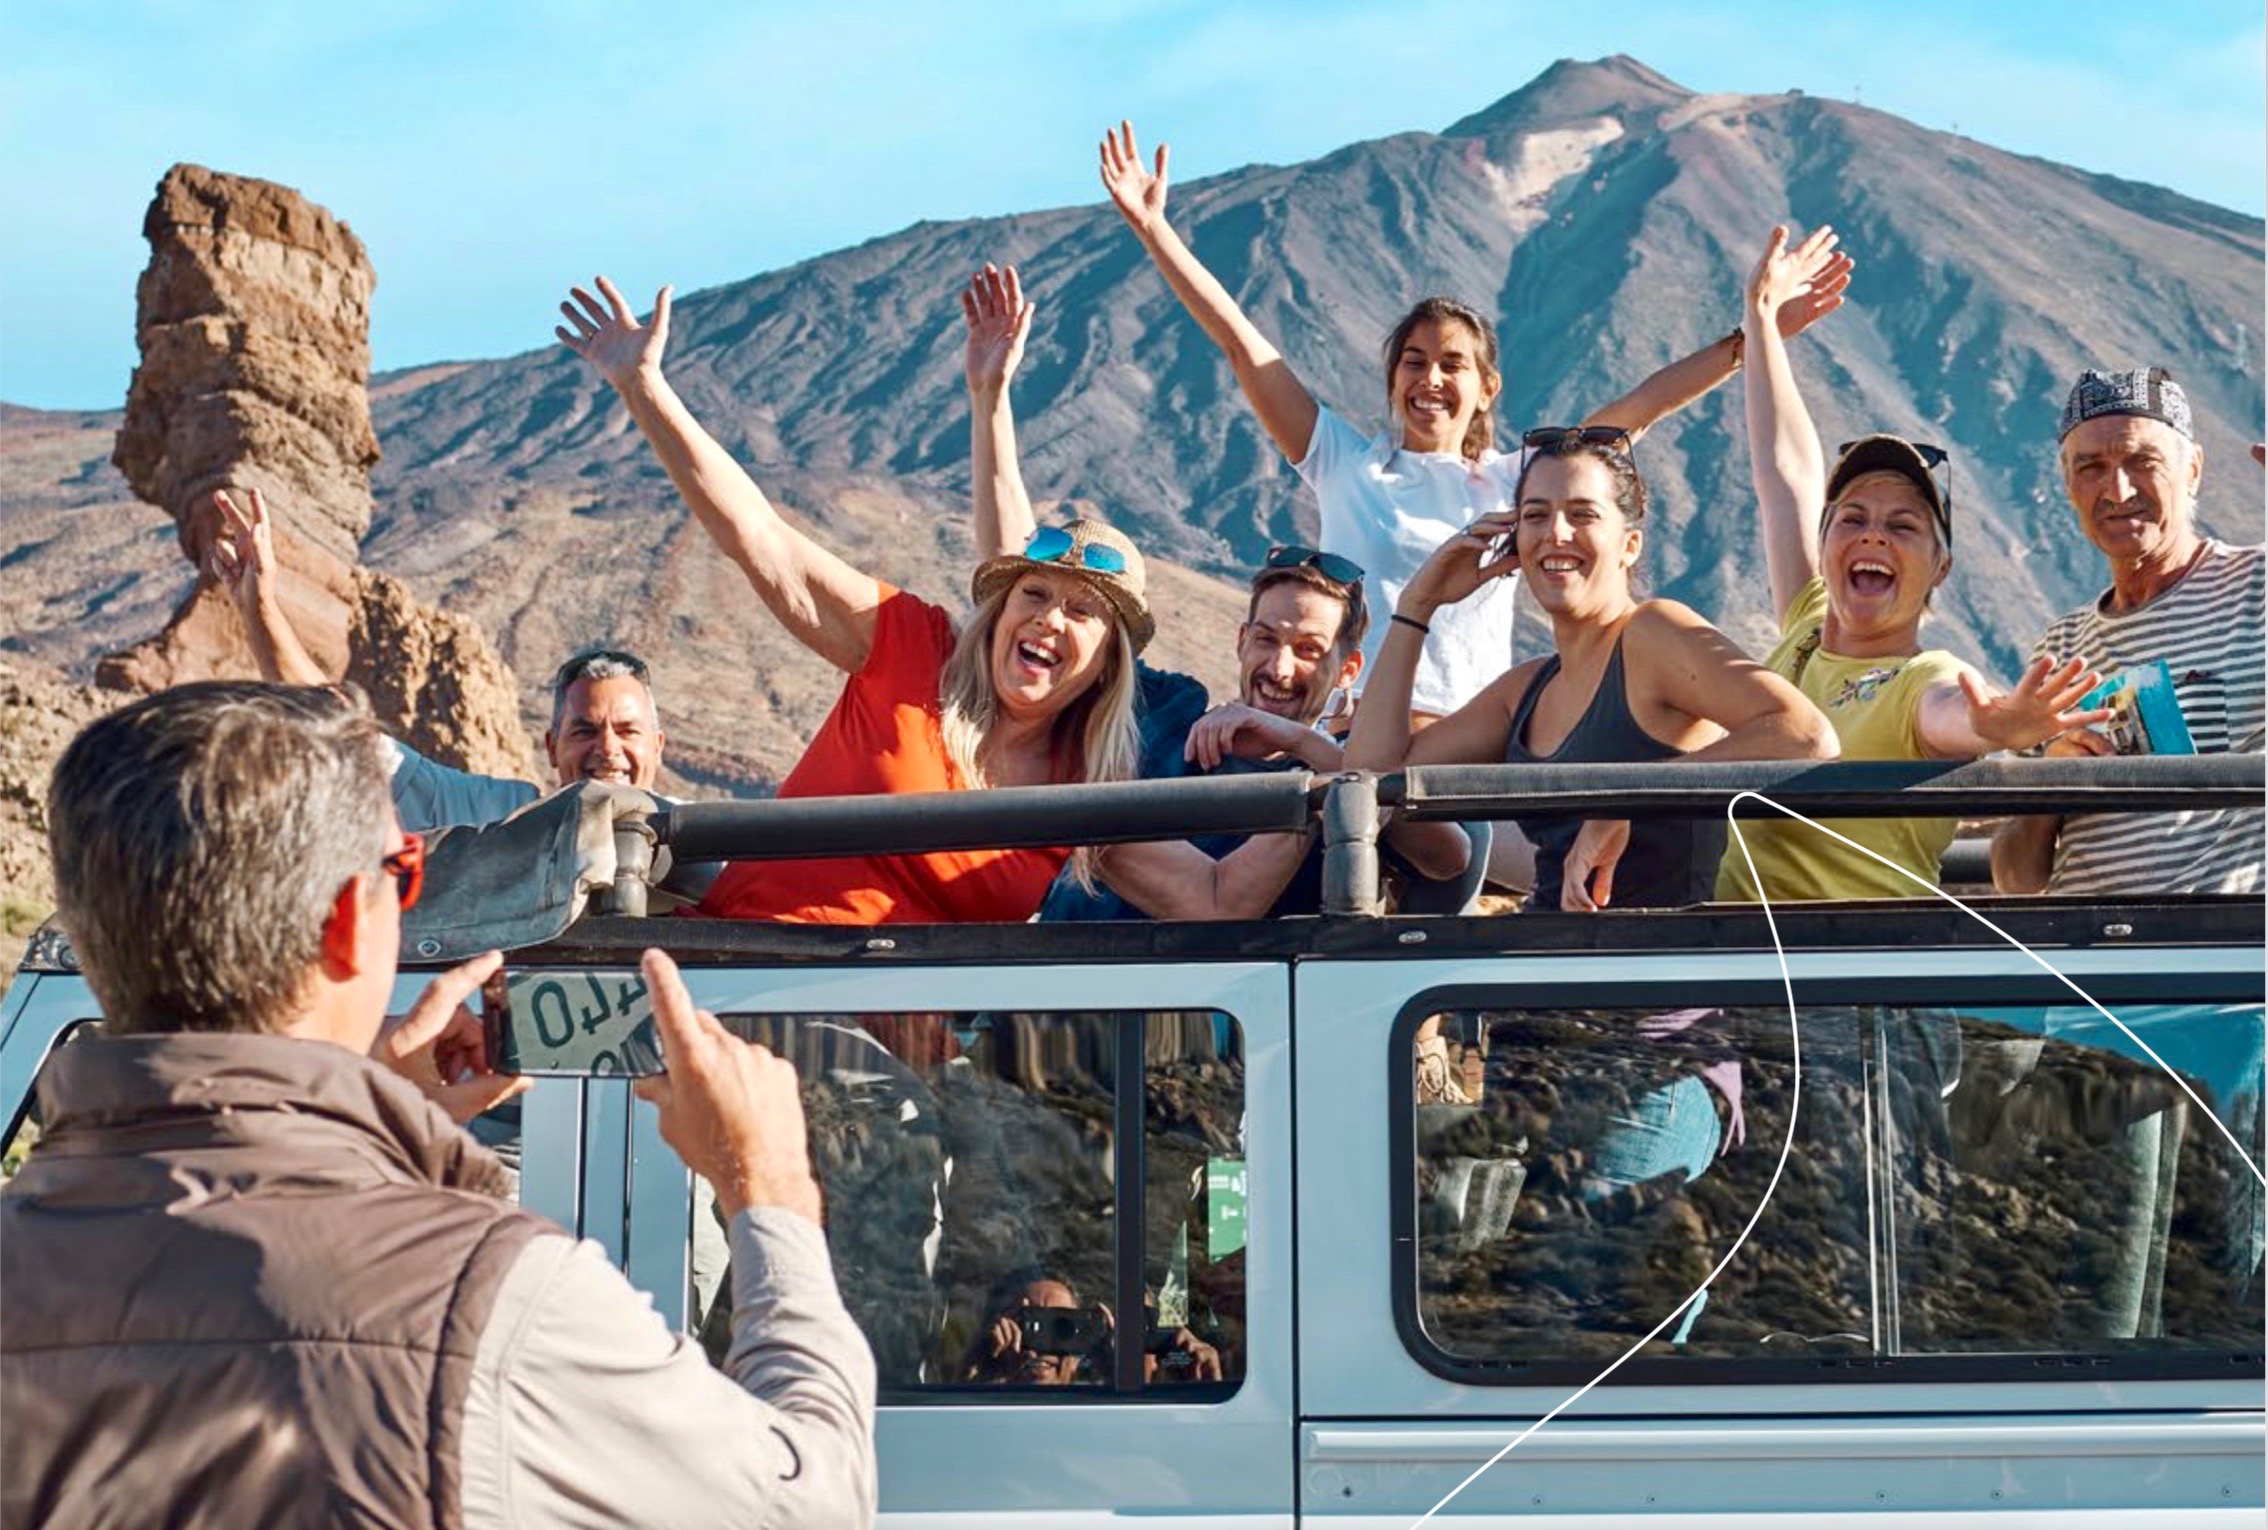 Un grupo de viajeros en una excursión turística felizmente posando para la foto frente al volcán Teide